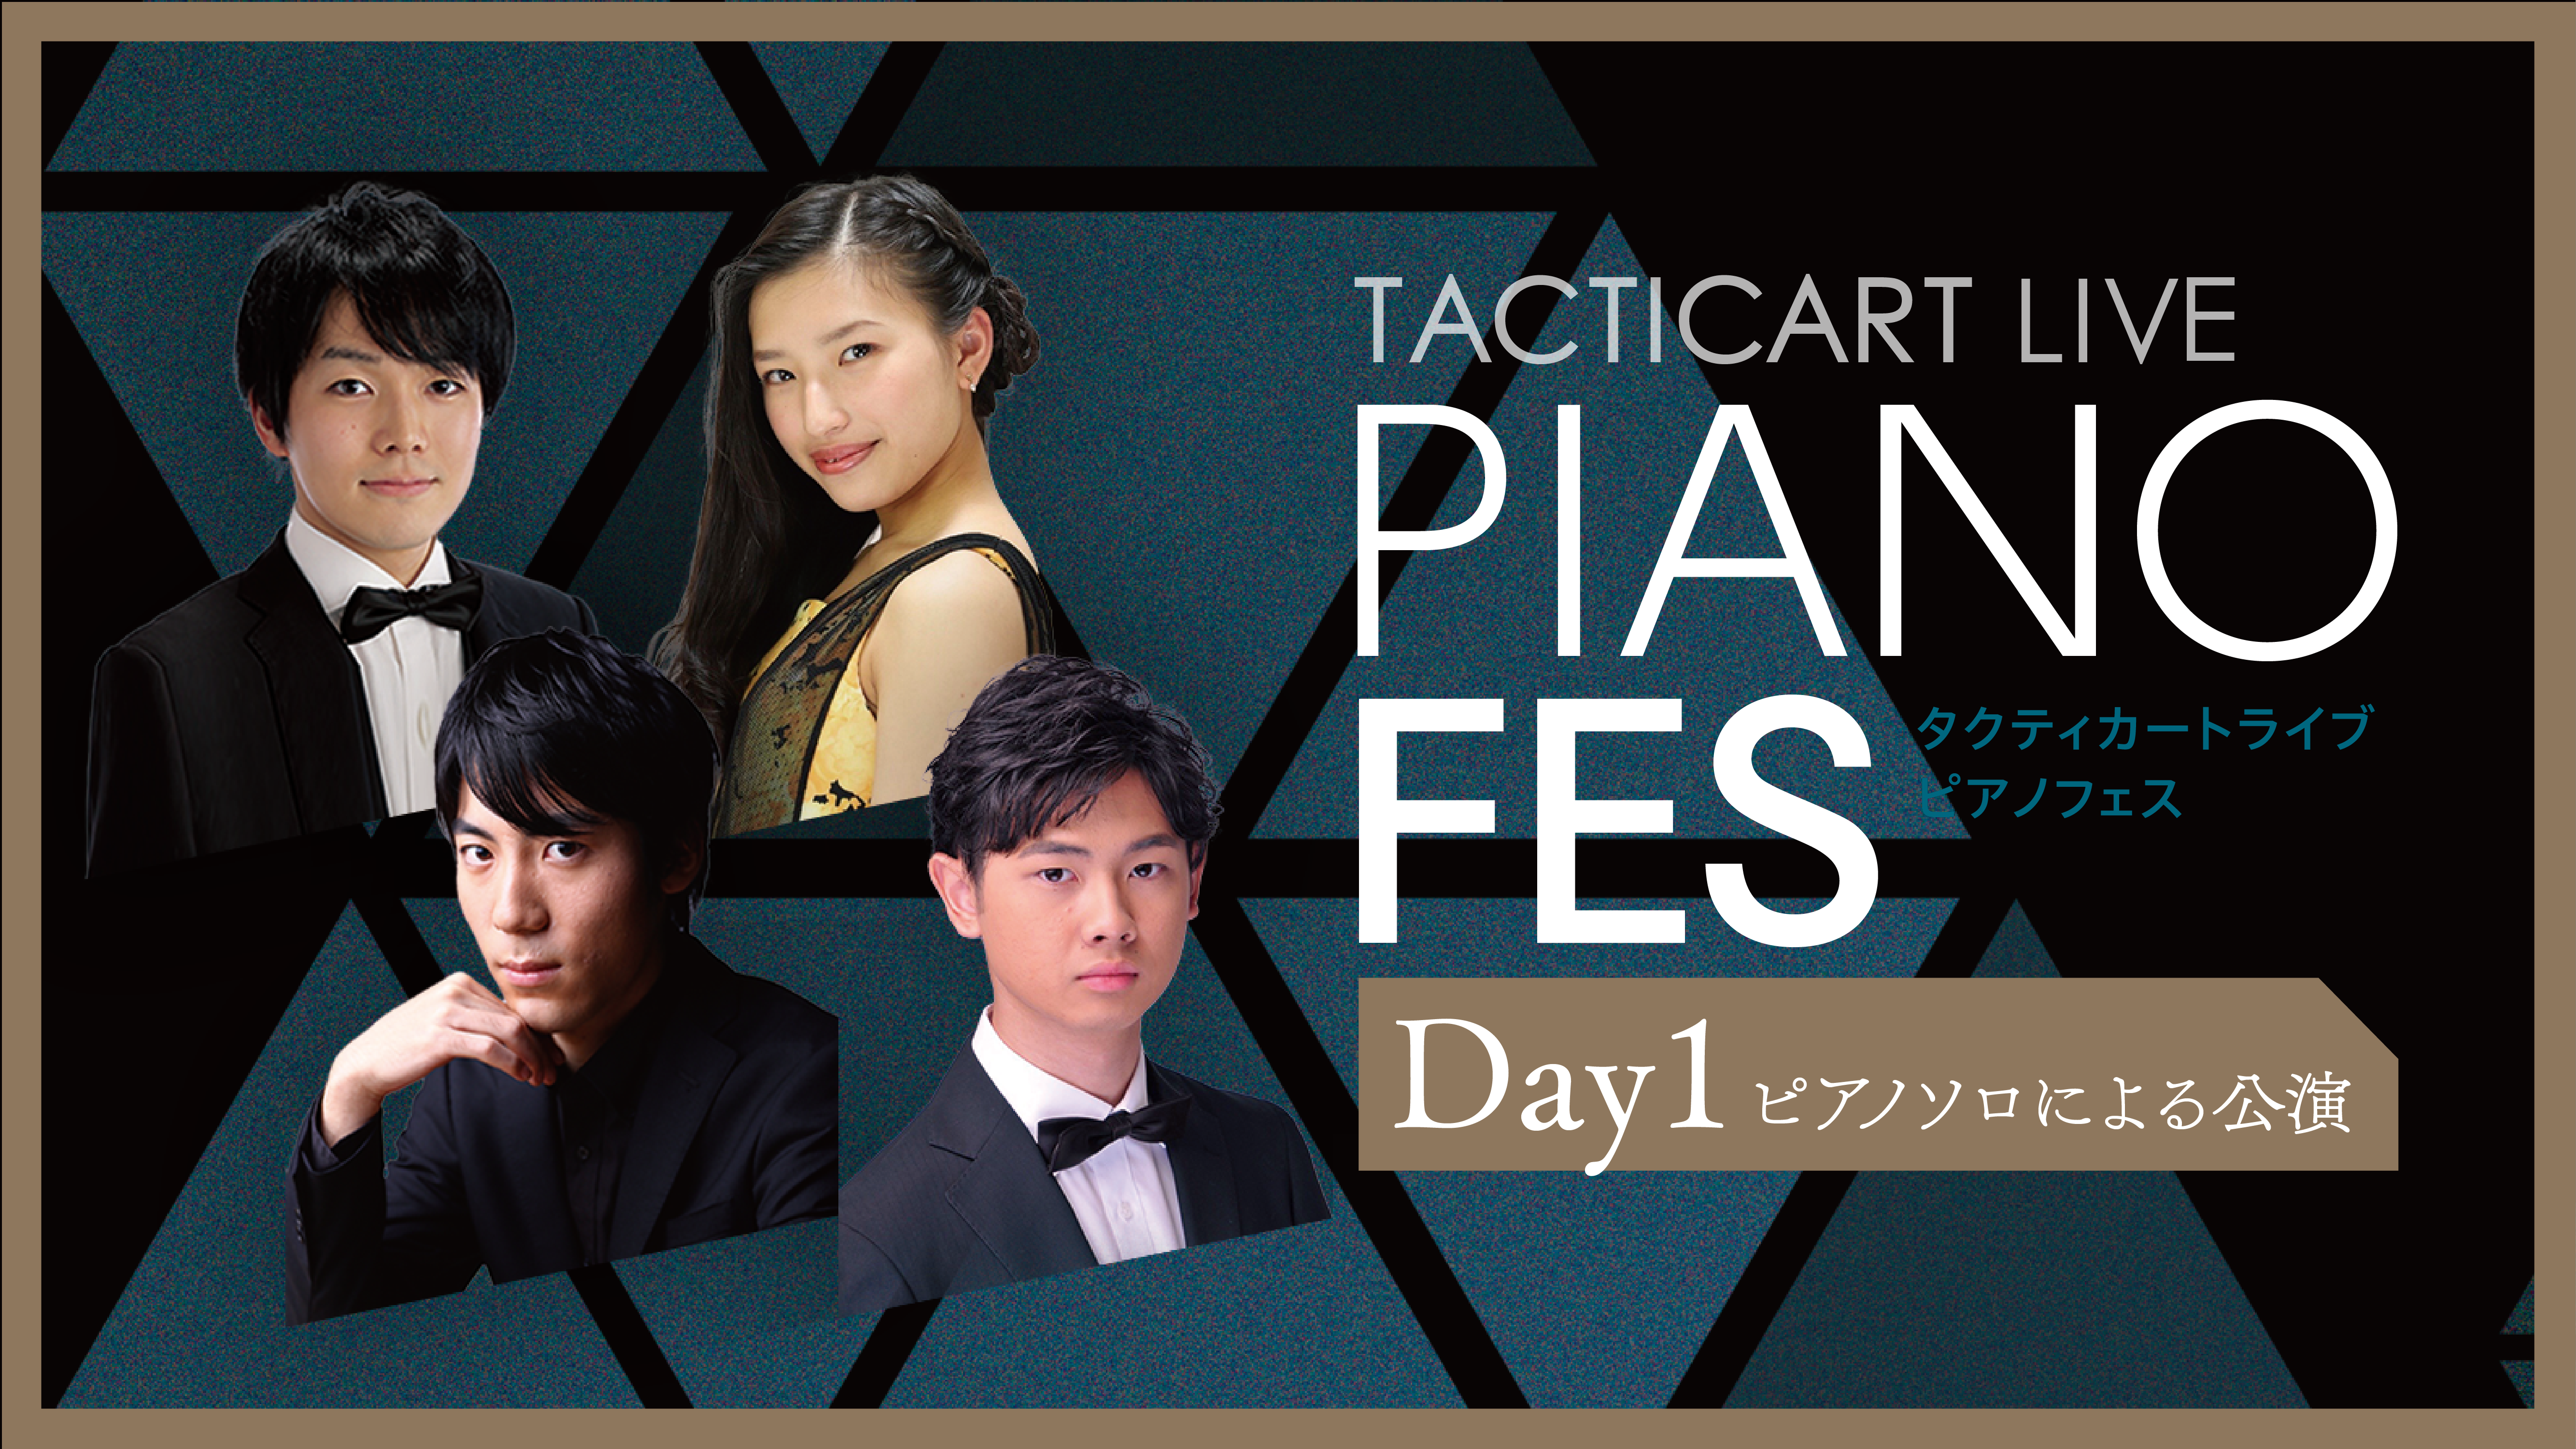 Tacticart Piano Fes Day1 ピアノソロ公演 タクティカートライブ